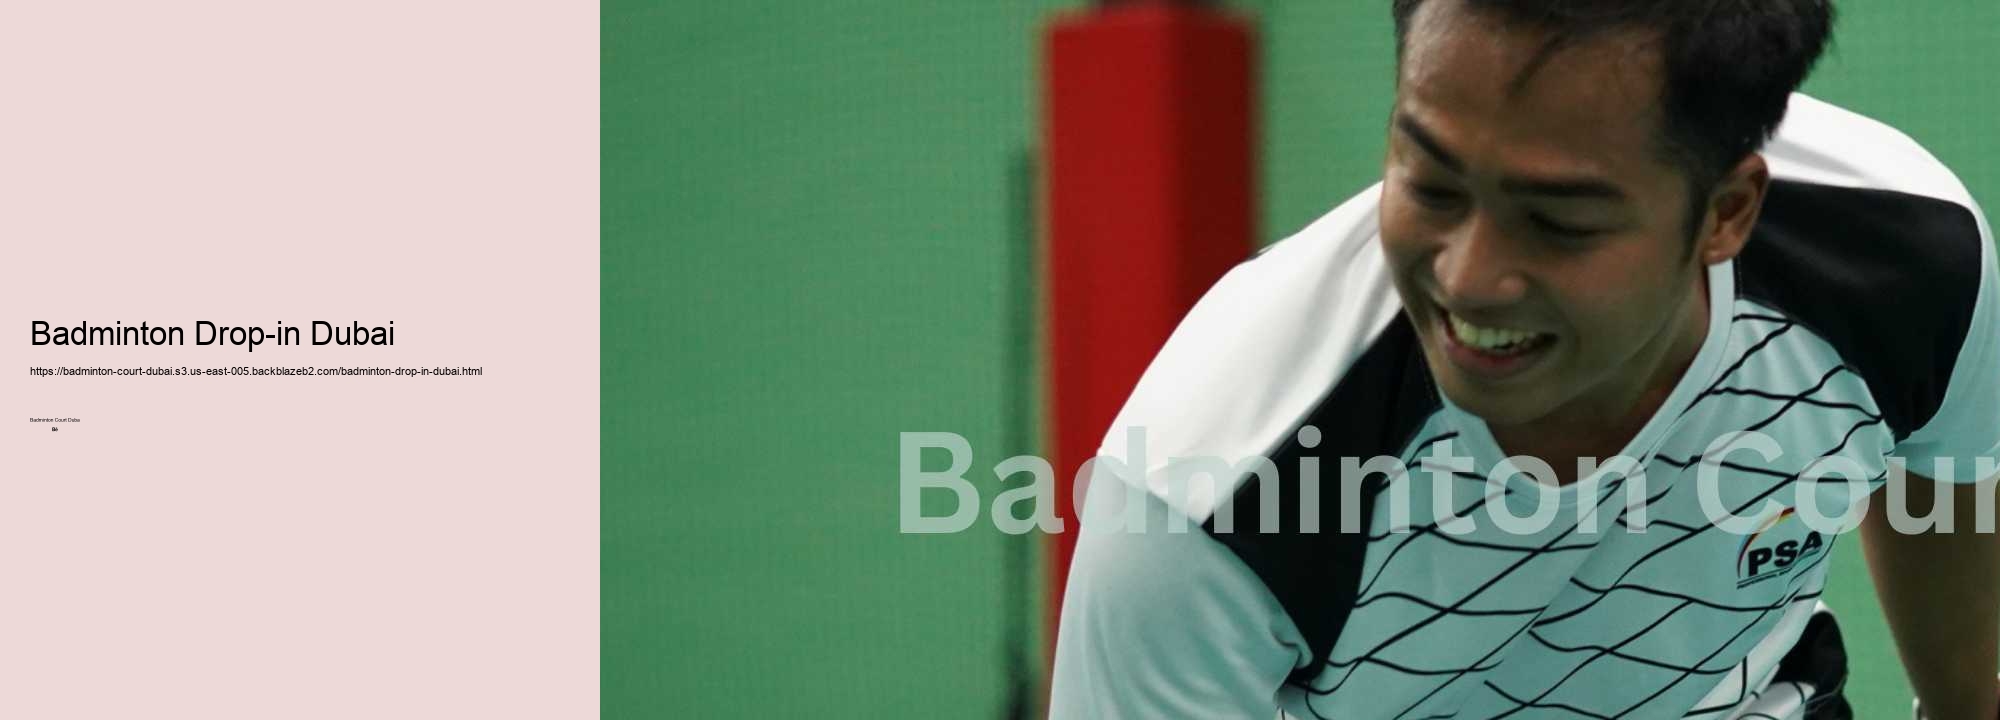 Badminton Drop-in Dubai